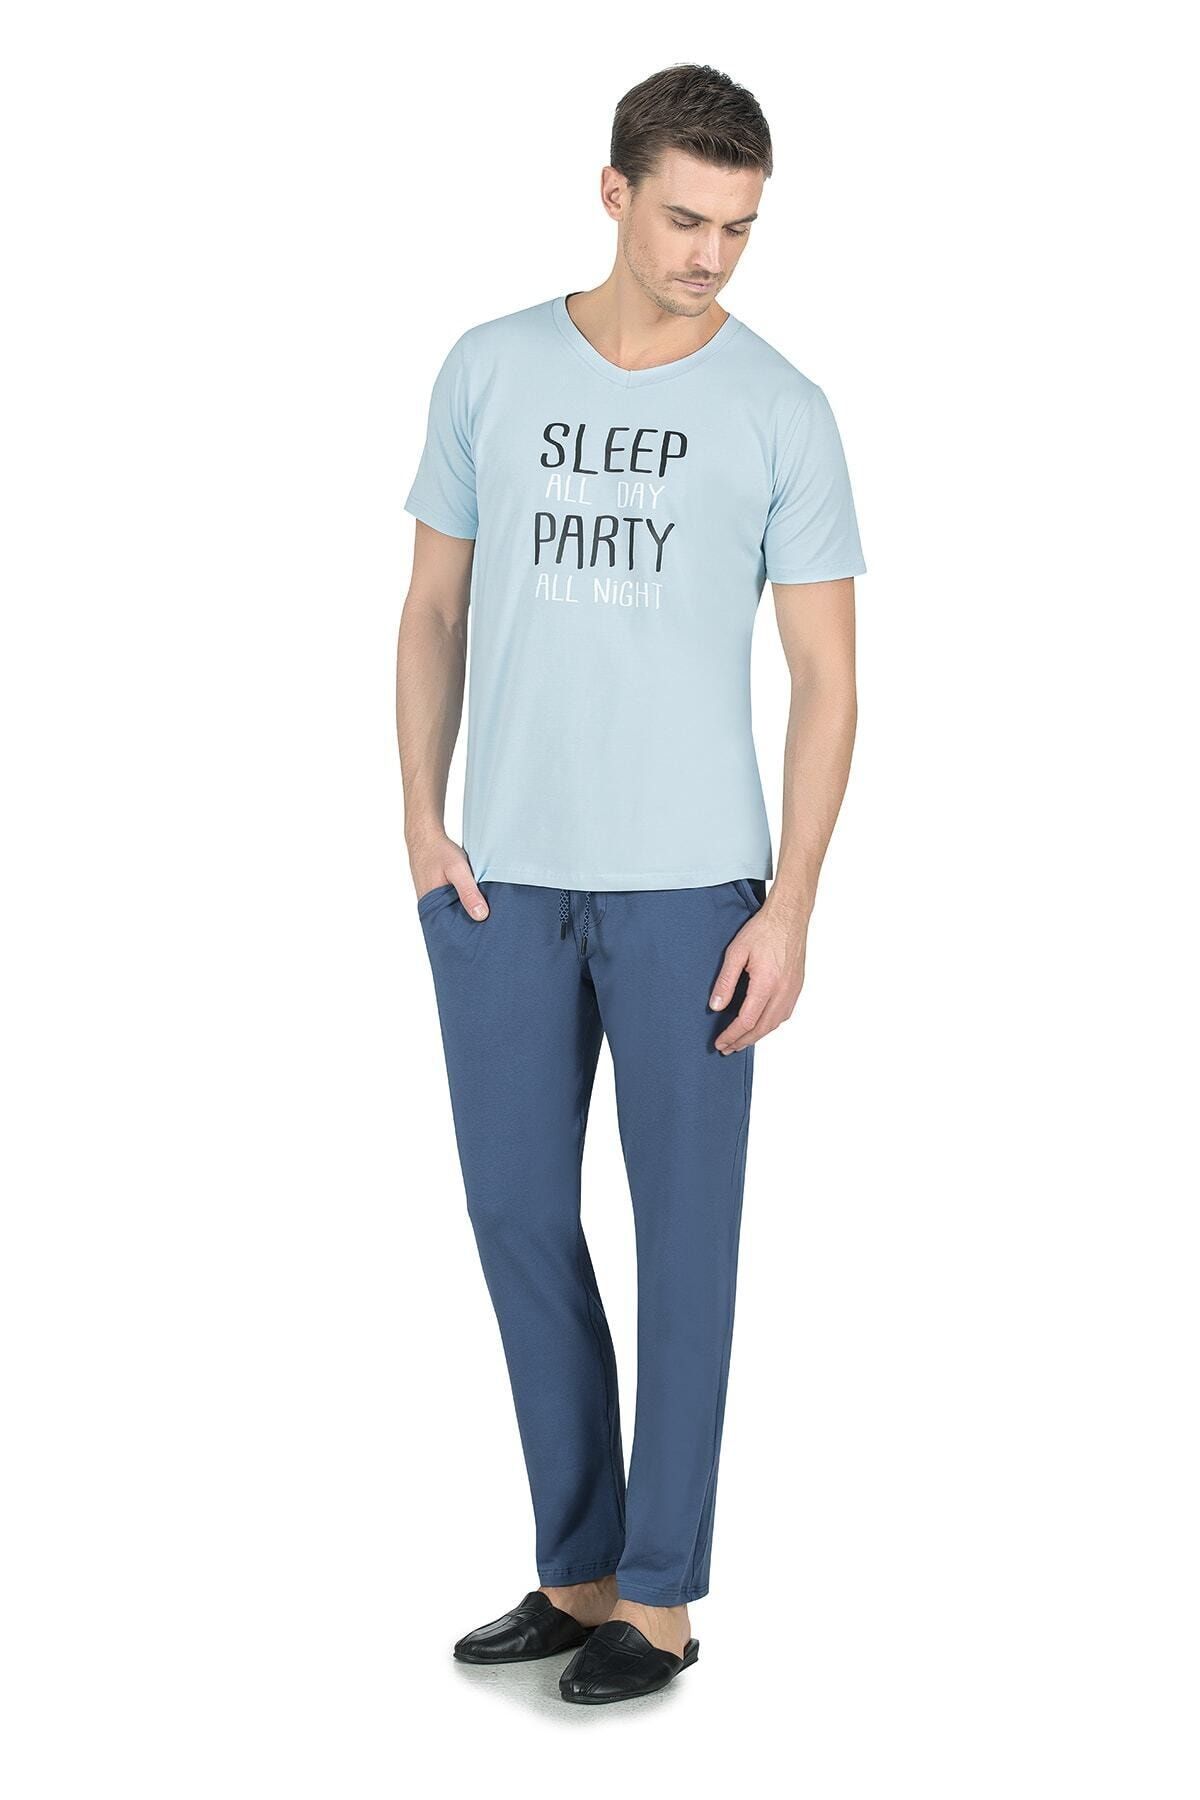 Jiber 4720 Pijama Takımı